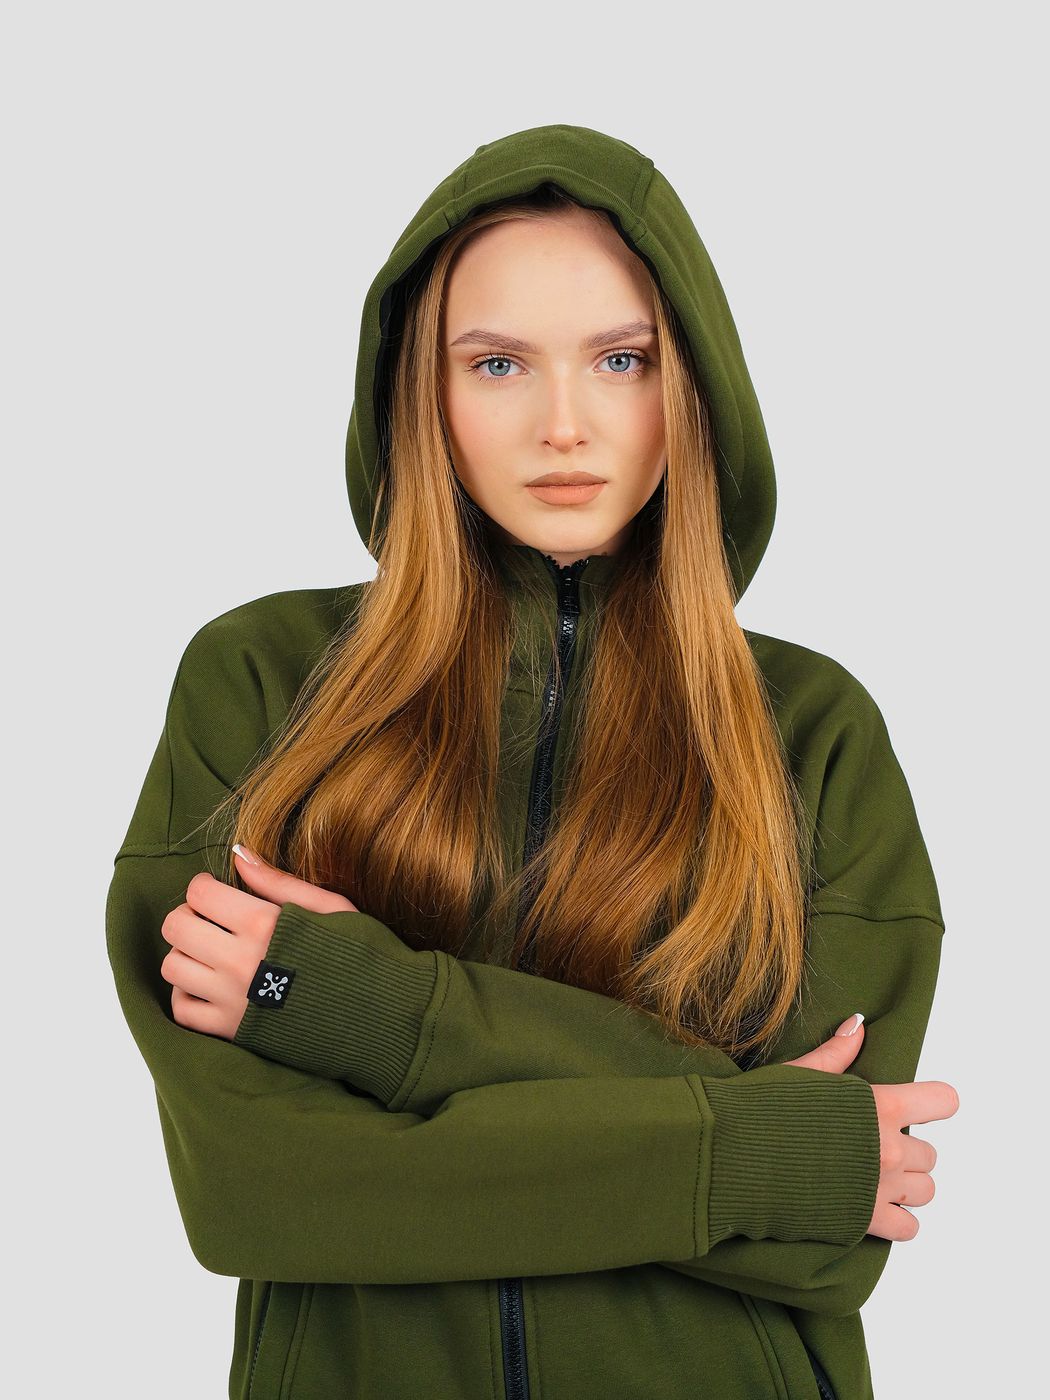 Костюм женский худи на молнии и штаны Зеленый, Зеленый, M-L, L (108 см)